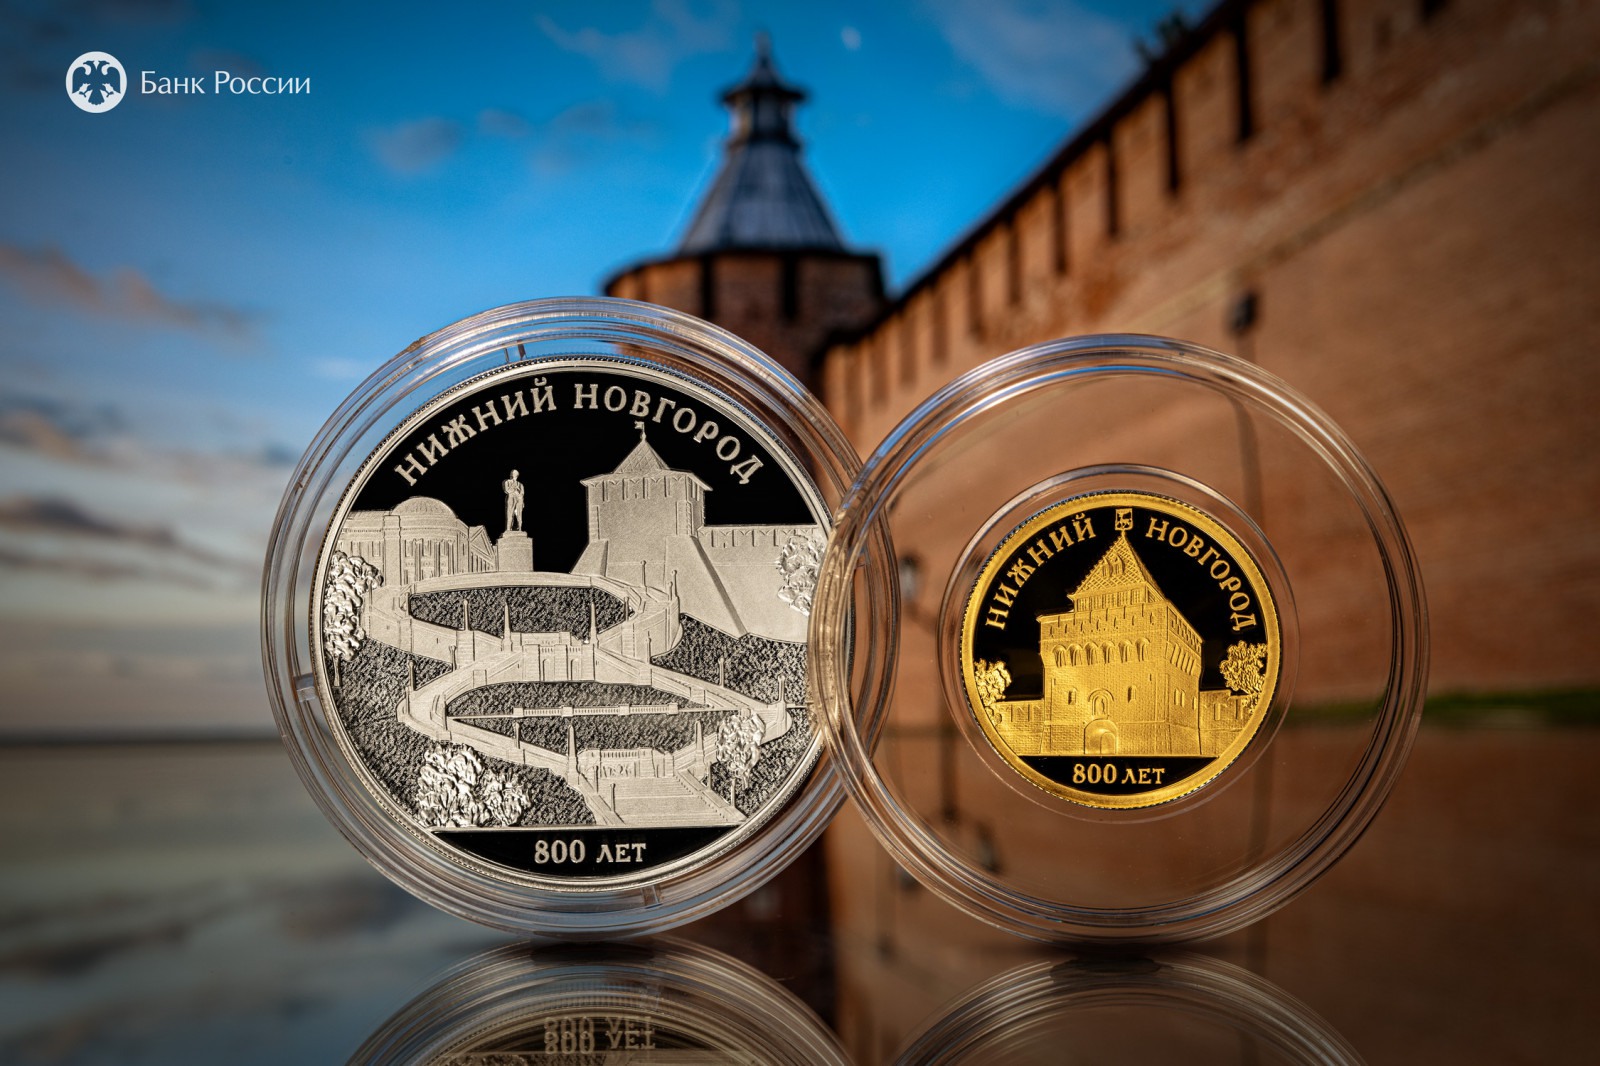 Символы Нижнего Новгорода появятся на монетах Банка России